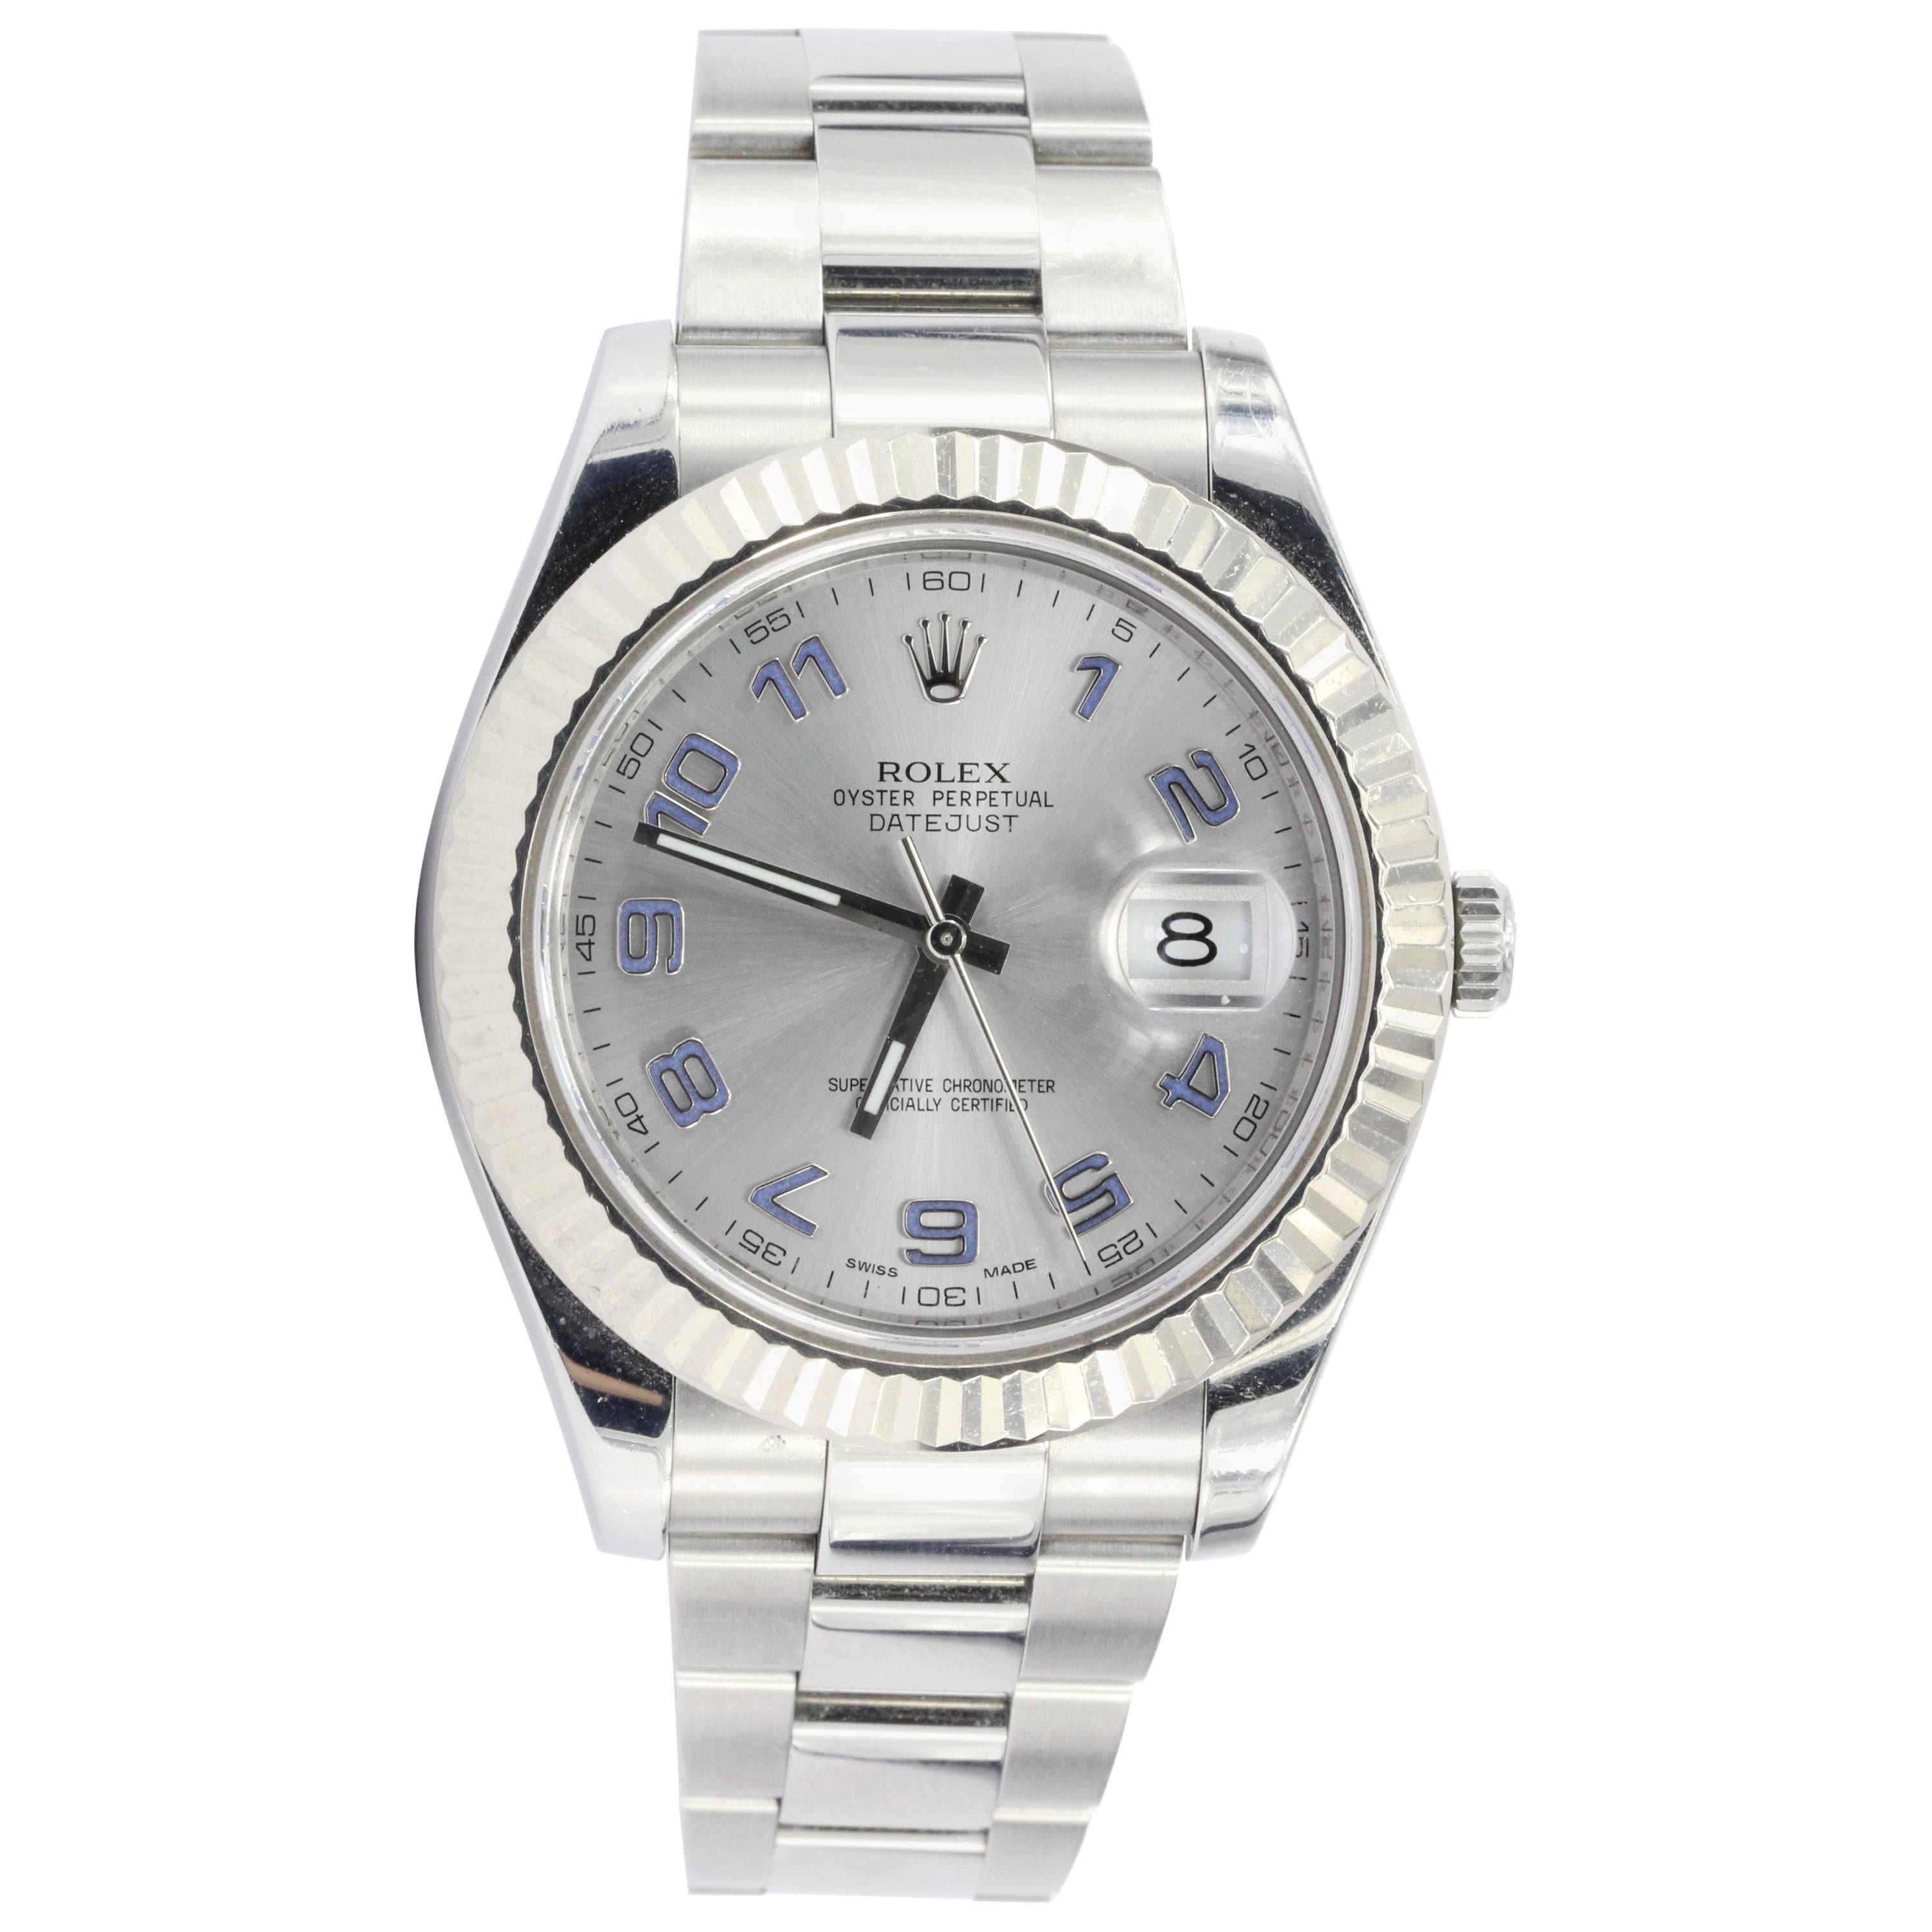 Rolex White Gold Stainless Steel Datejust II Rhodium Dial Wristwatch